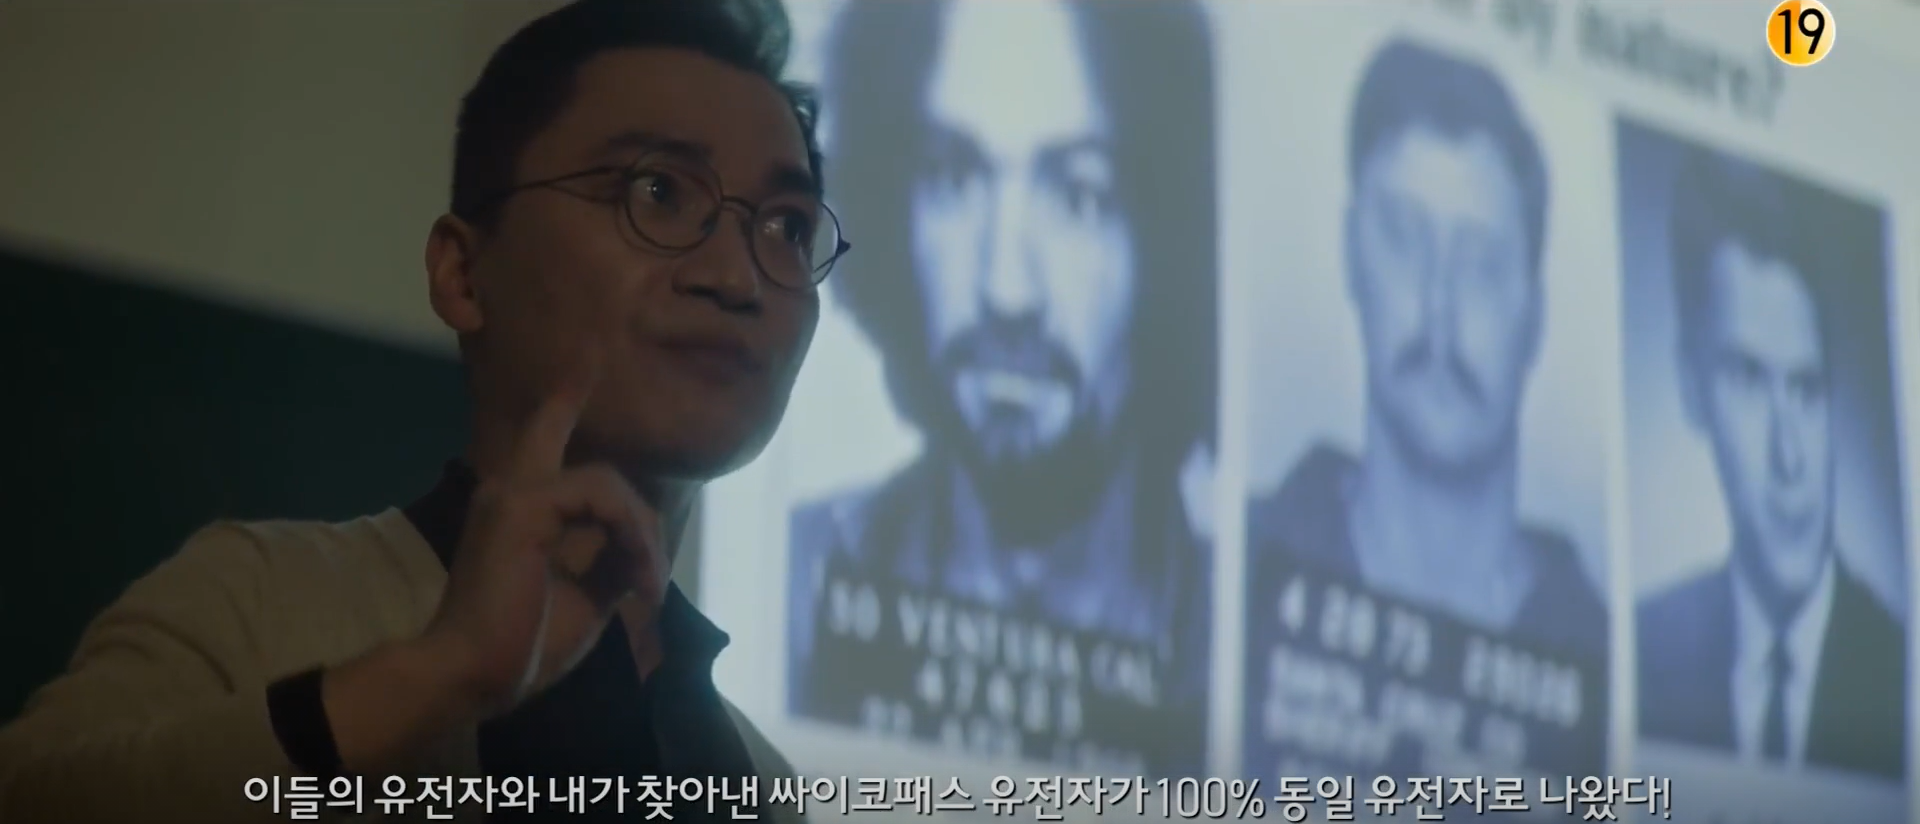 mouse korean drama review - daniel lee